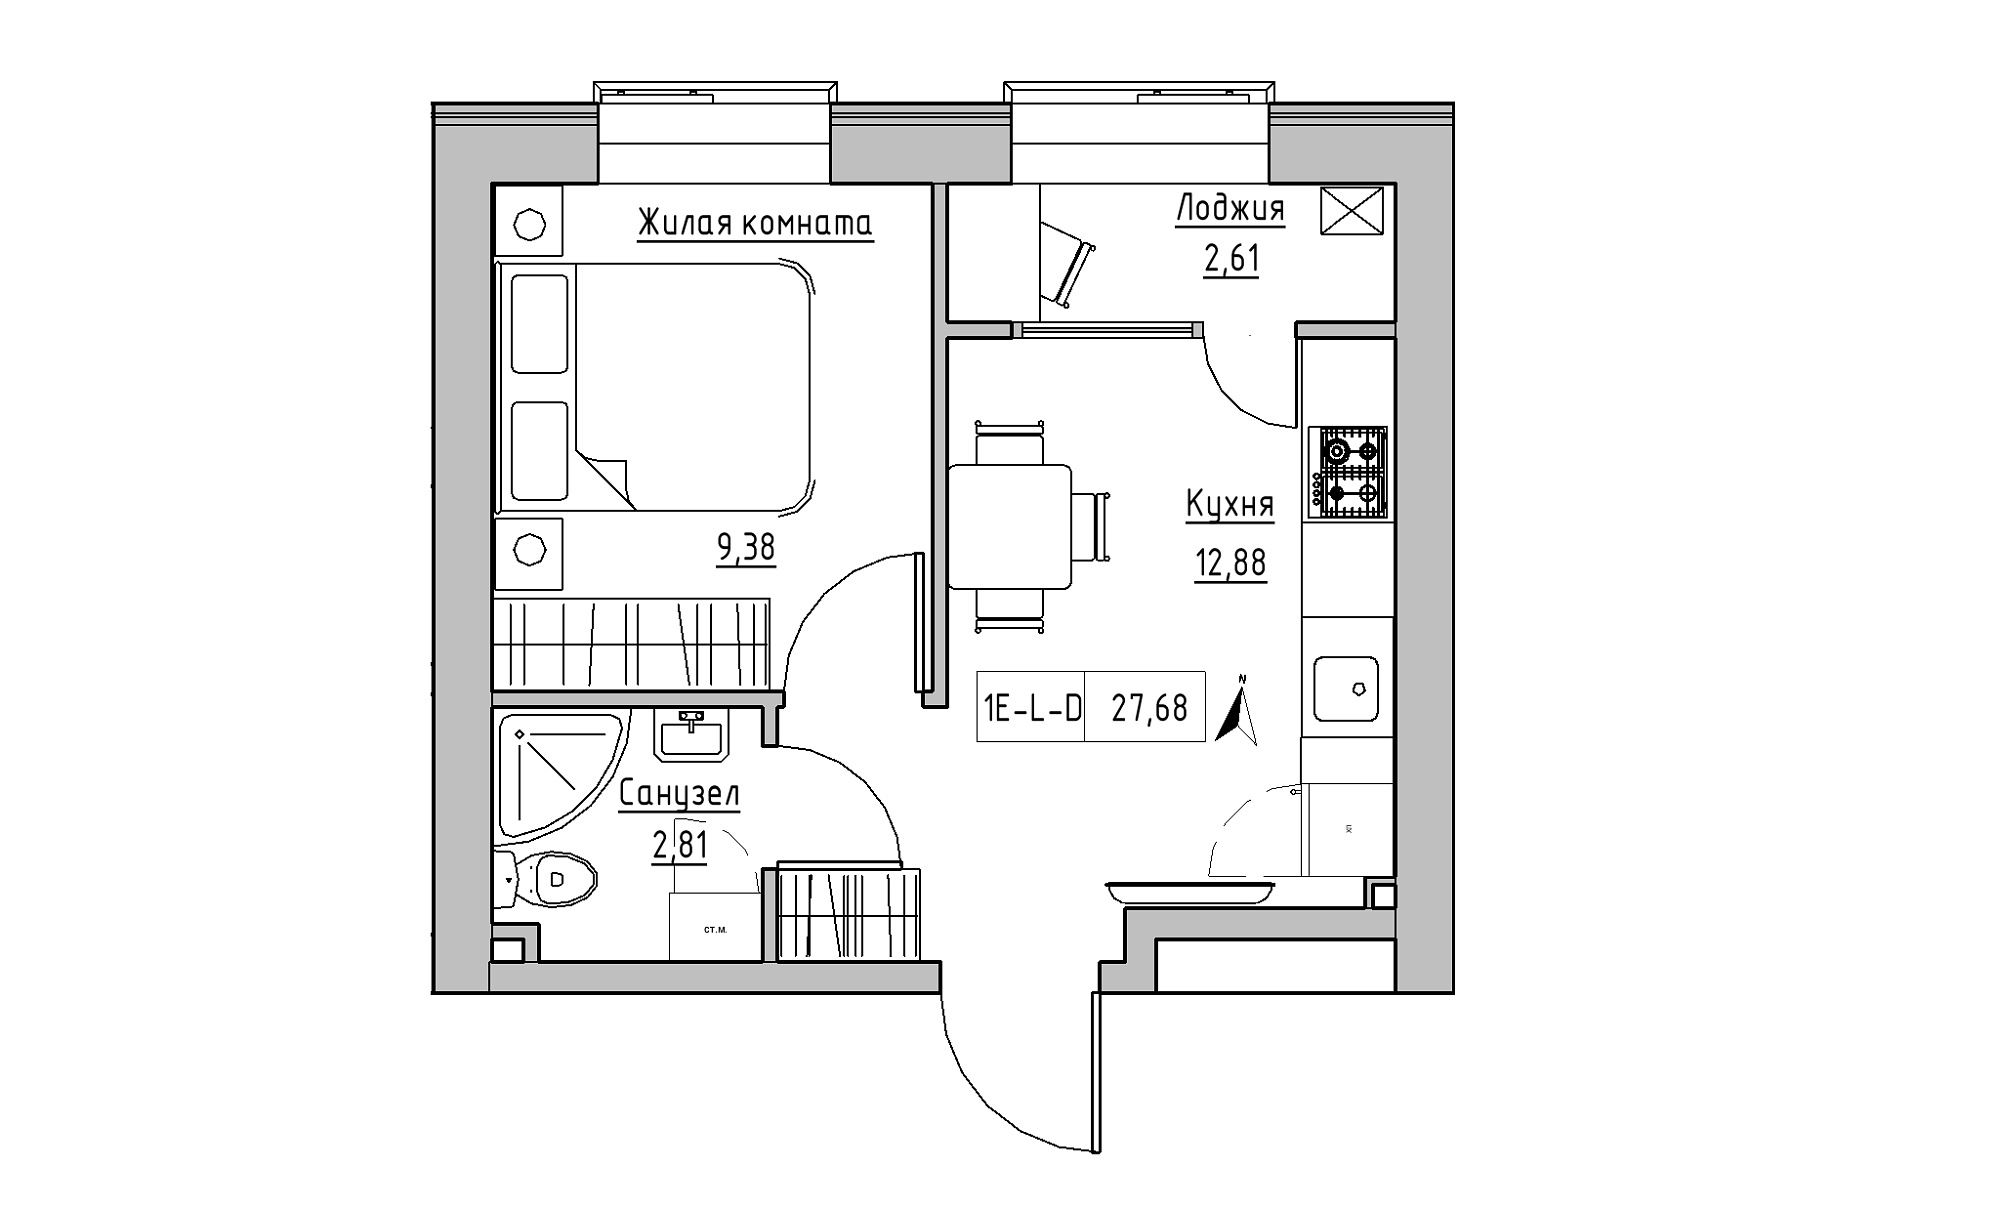 Планировка 1-к квартира площей 27.68м2, KS-016-04/0001.